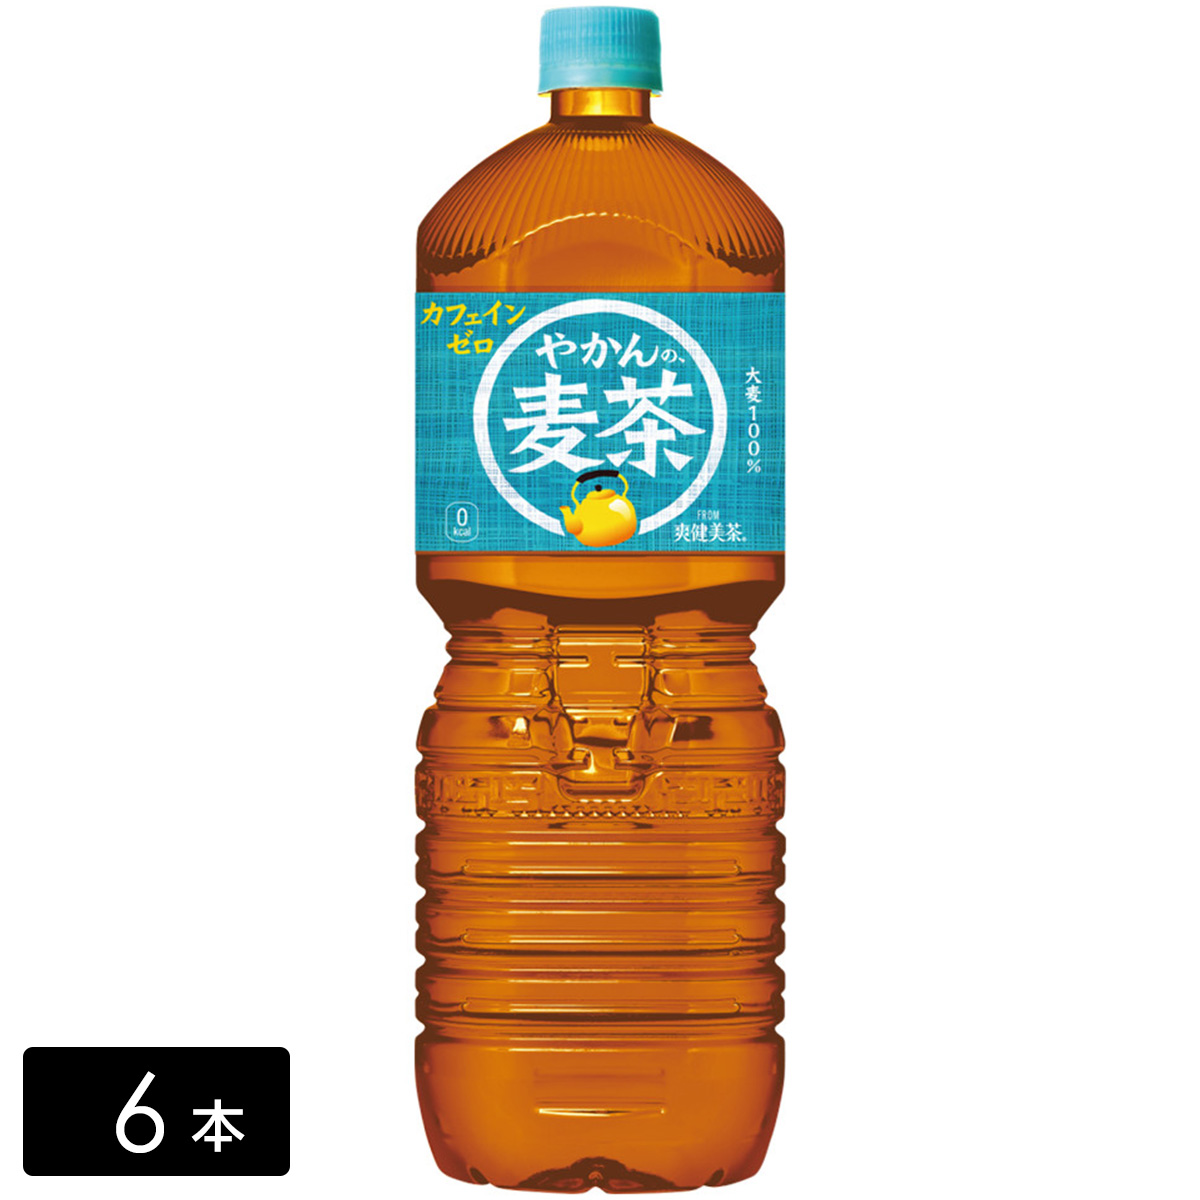 やかんの麦茶 from 一(はじめ) 2L×6本(1箱) ペットボトル ケース売り